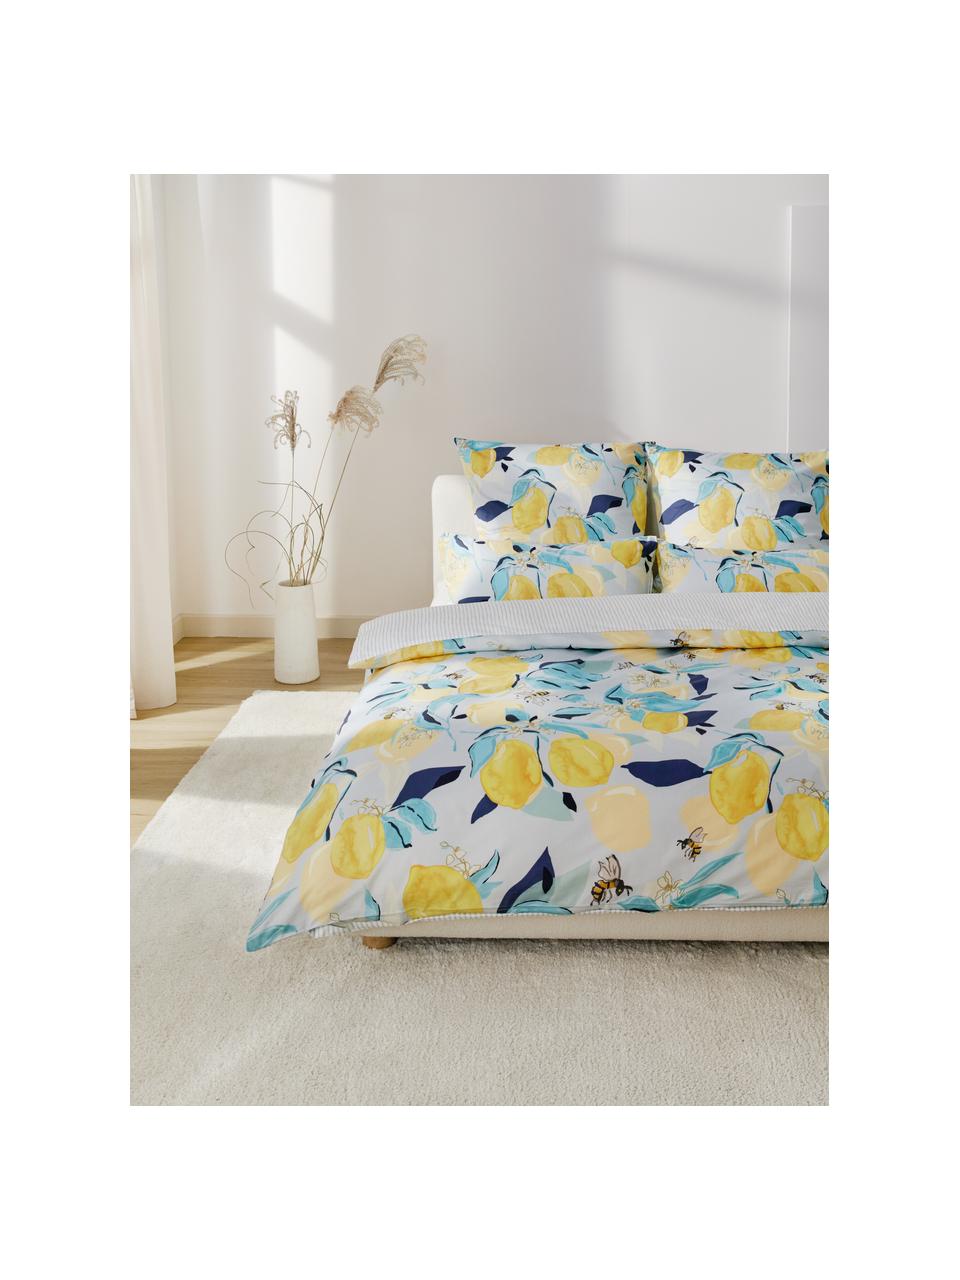 Ropa de cama doble cara de satín Garda, Blanco, amarillo, azul, Cama 80 cm (135 x 200 cm), 2 pzas.